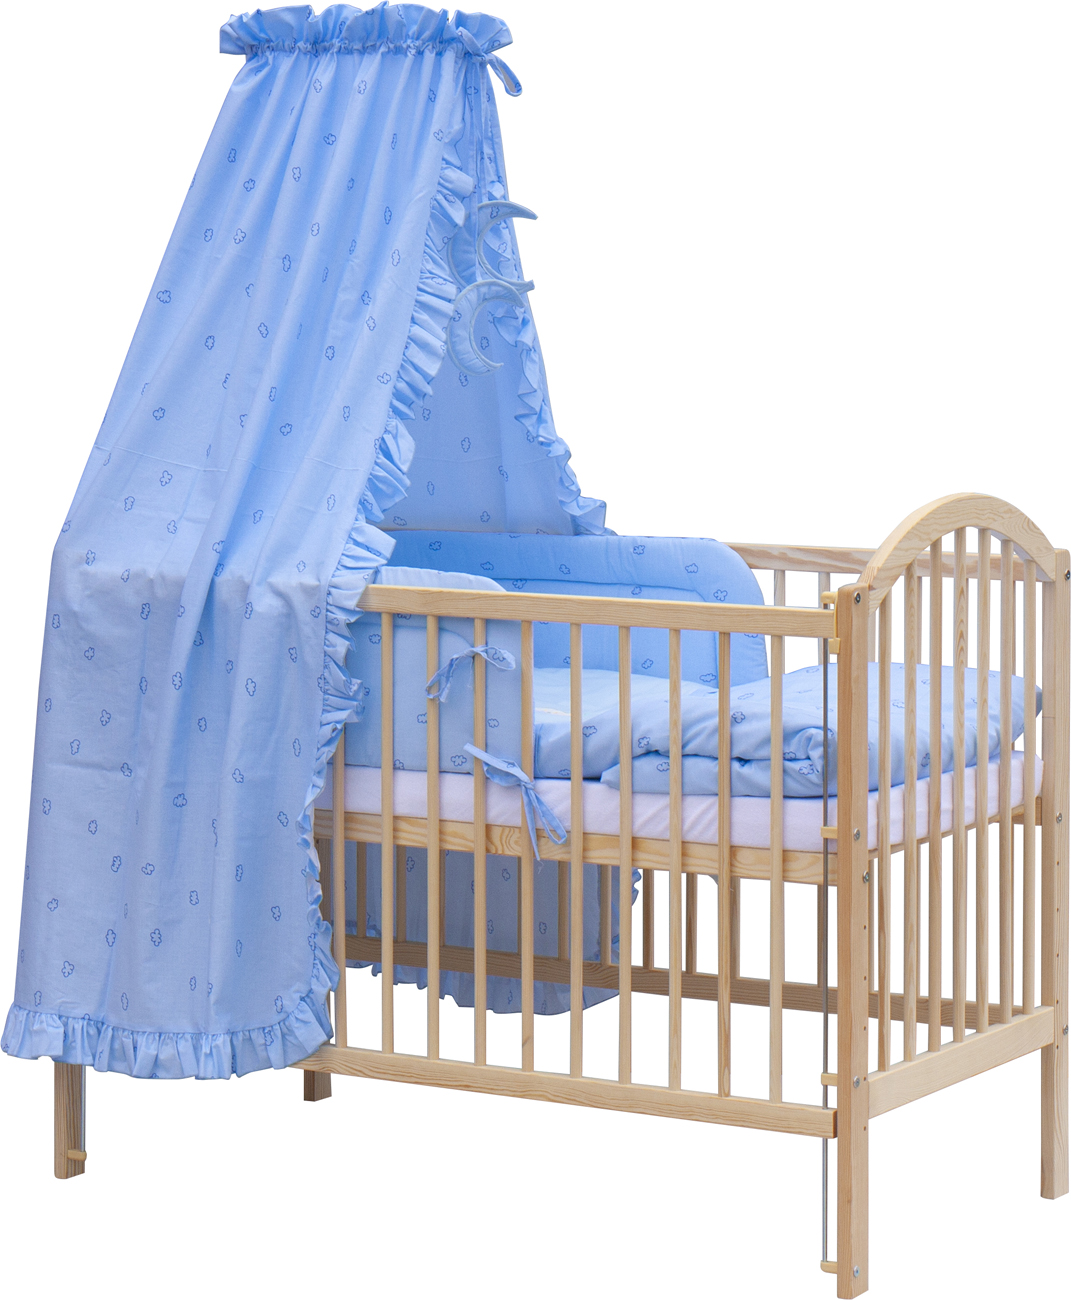 Dětská postýlka s kompletní výbavou Scarlett 120 x 60 cm - Méďa - modrá